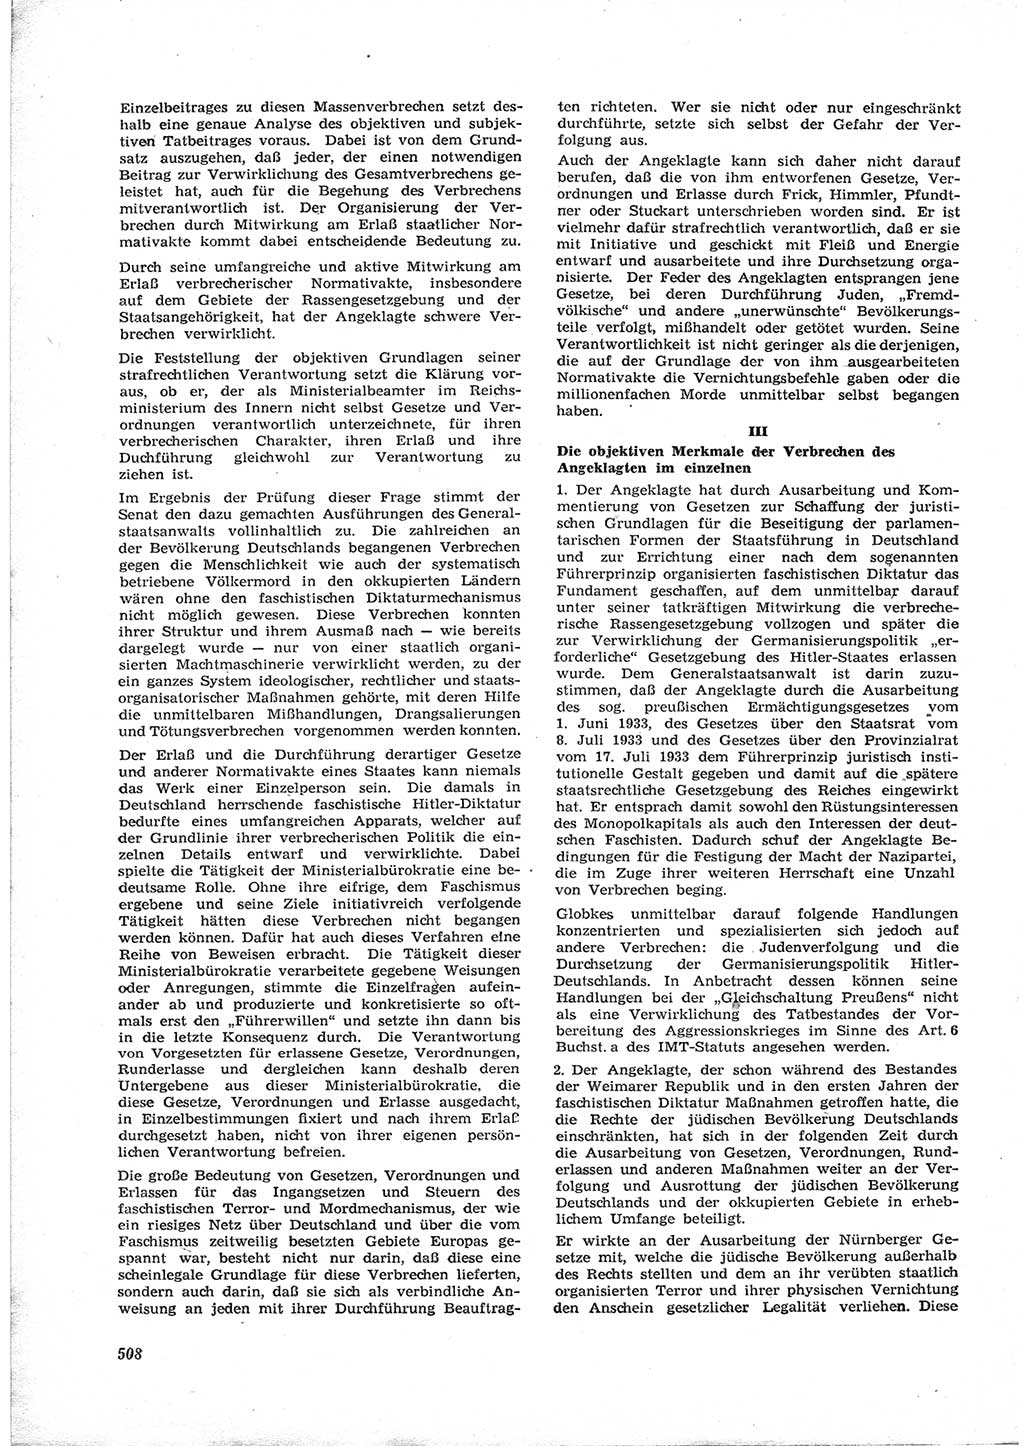 Neue Justiz (NJ), Zeitschrift für Recht und Rechtswissenschaft [Deutsche Demokratische Republik (DDR)], 17. Jahrgang 1963, Seite 508 (NJ DDR 1963, S. 508)